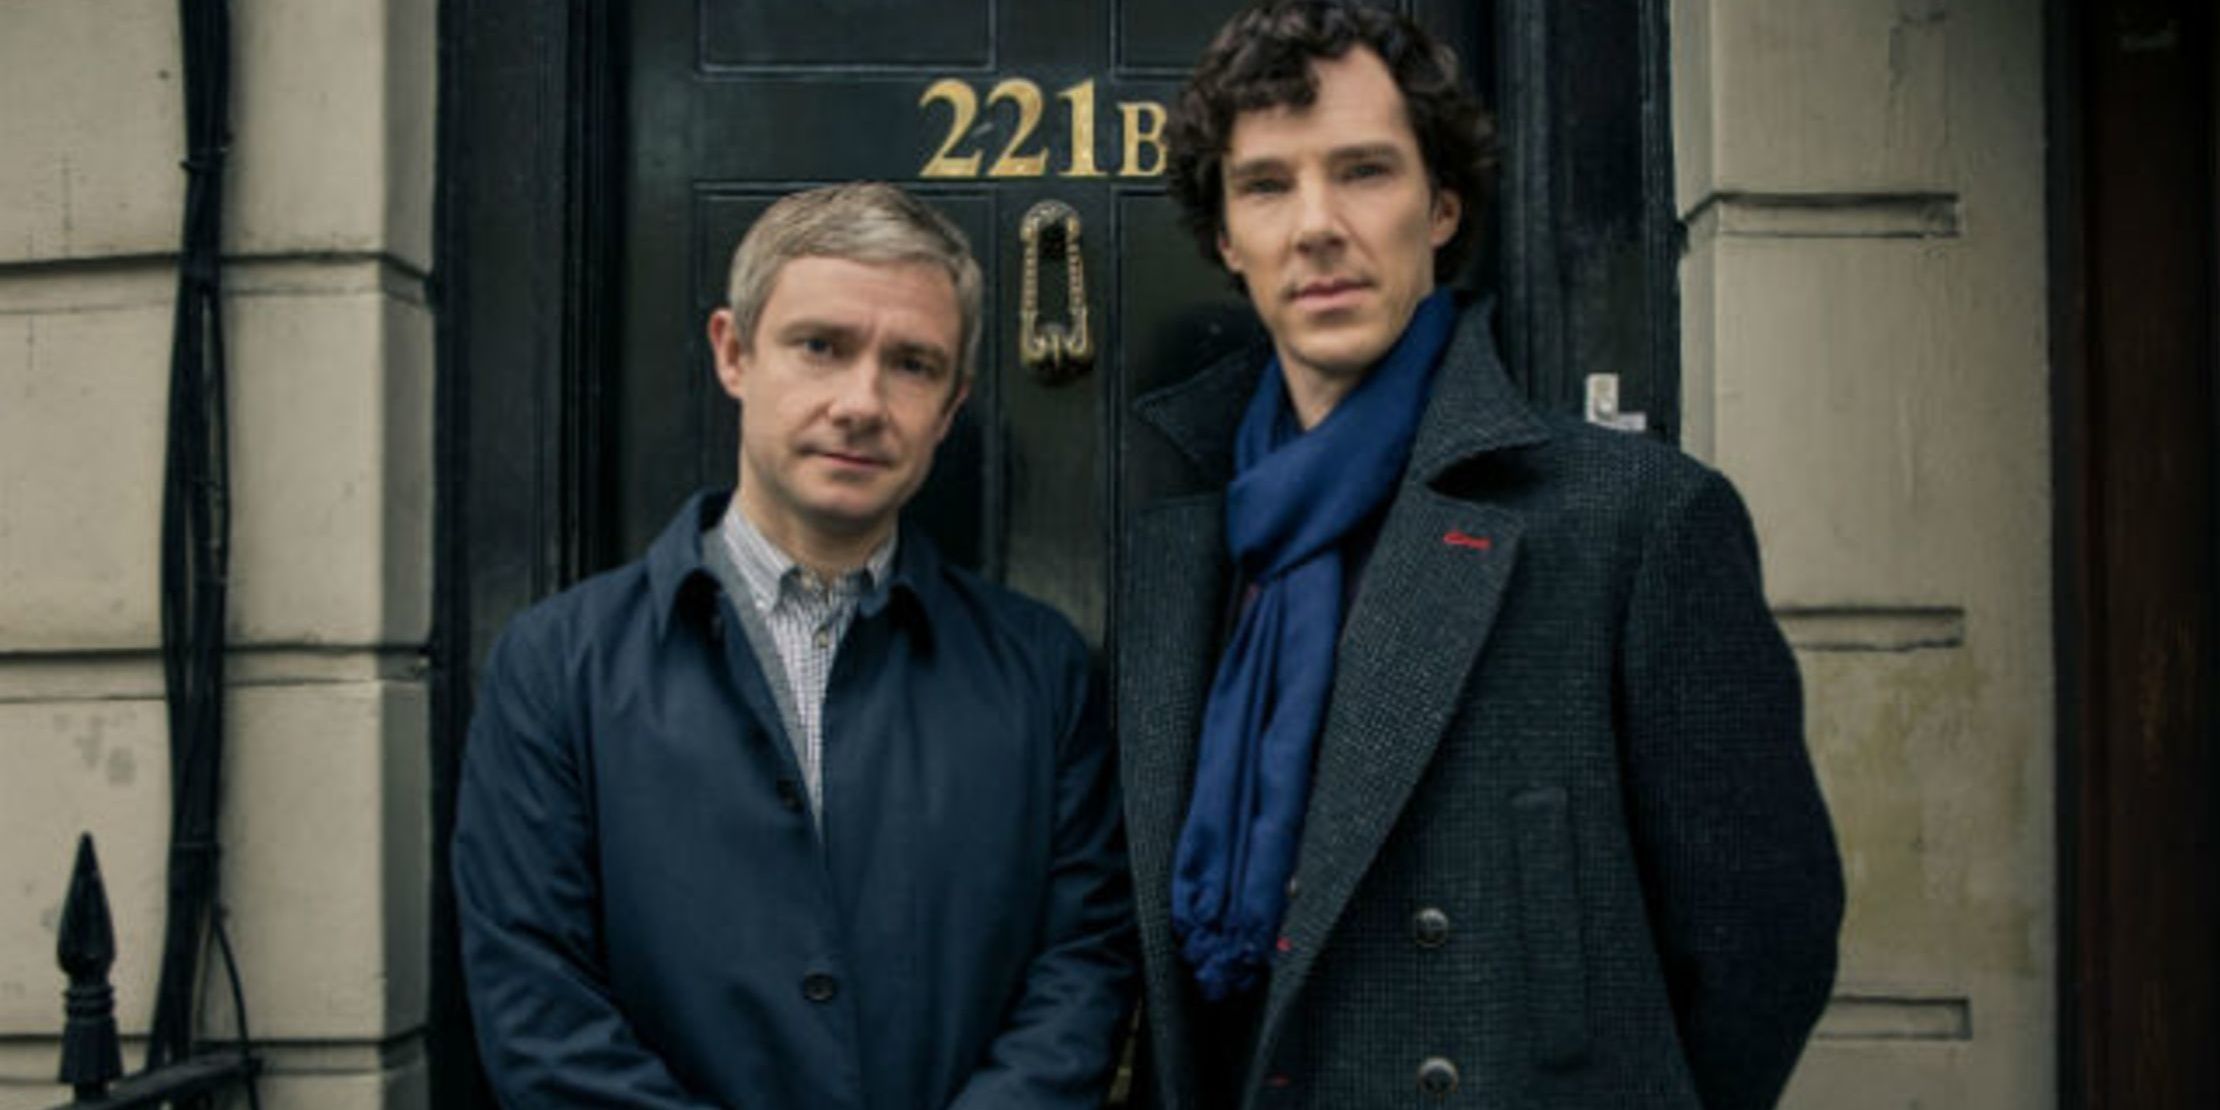 Sherlock and Watson outside of 221b Baker Street